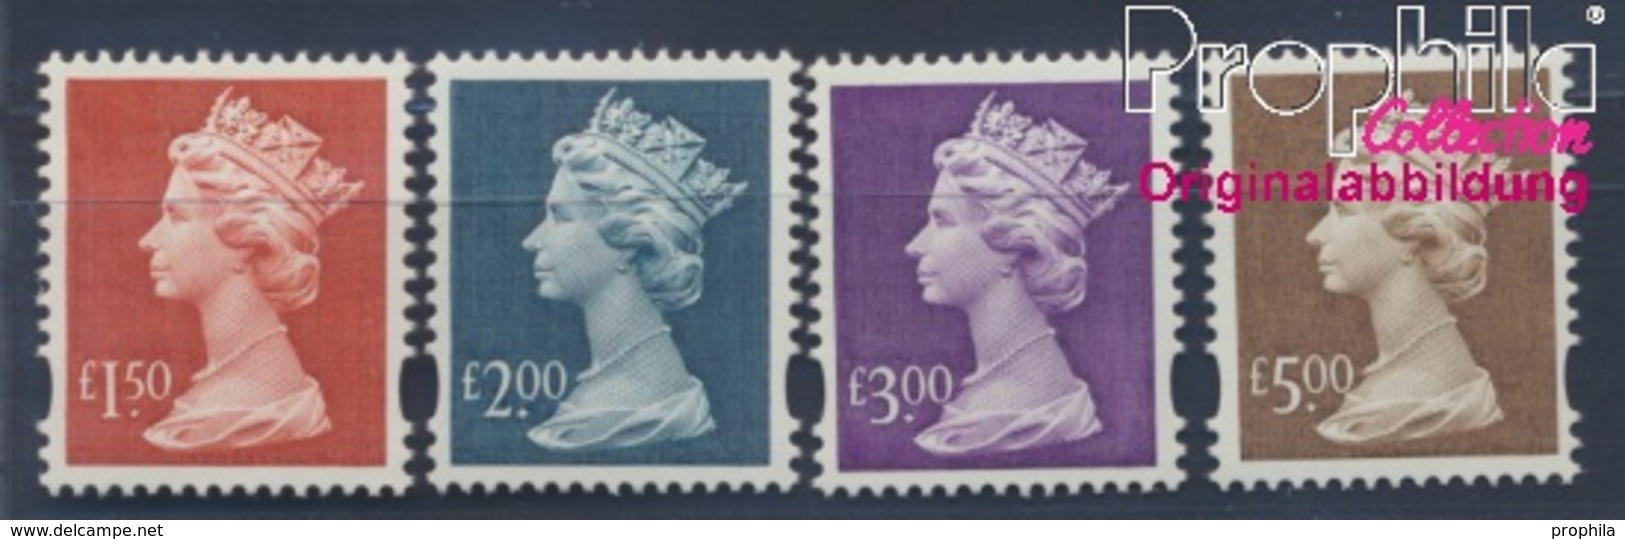 Großbritannien 1793-1796 (kompl.Ausg.) Postfrisch 1999 Elizabeth II. (8470523 - Ungebraucht